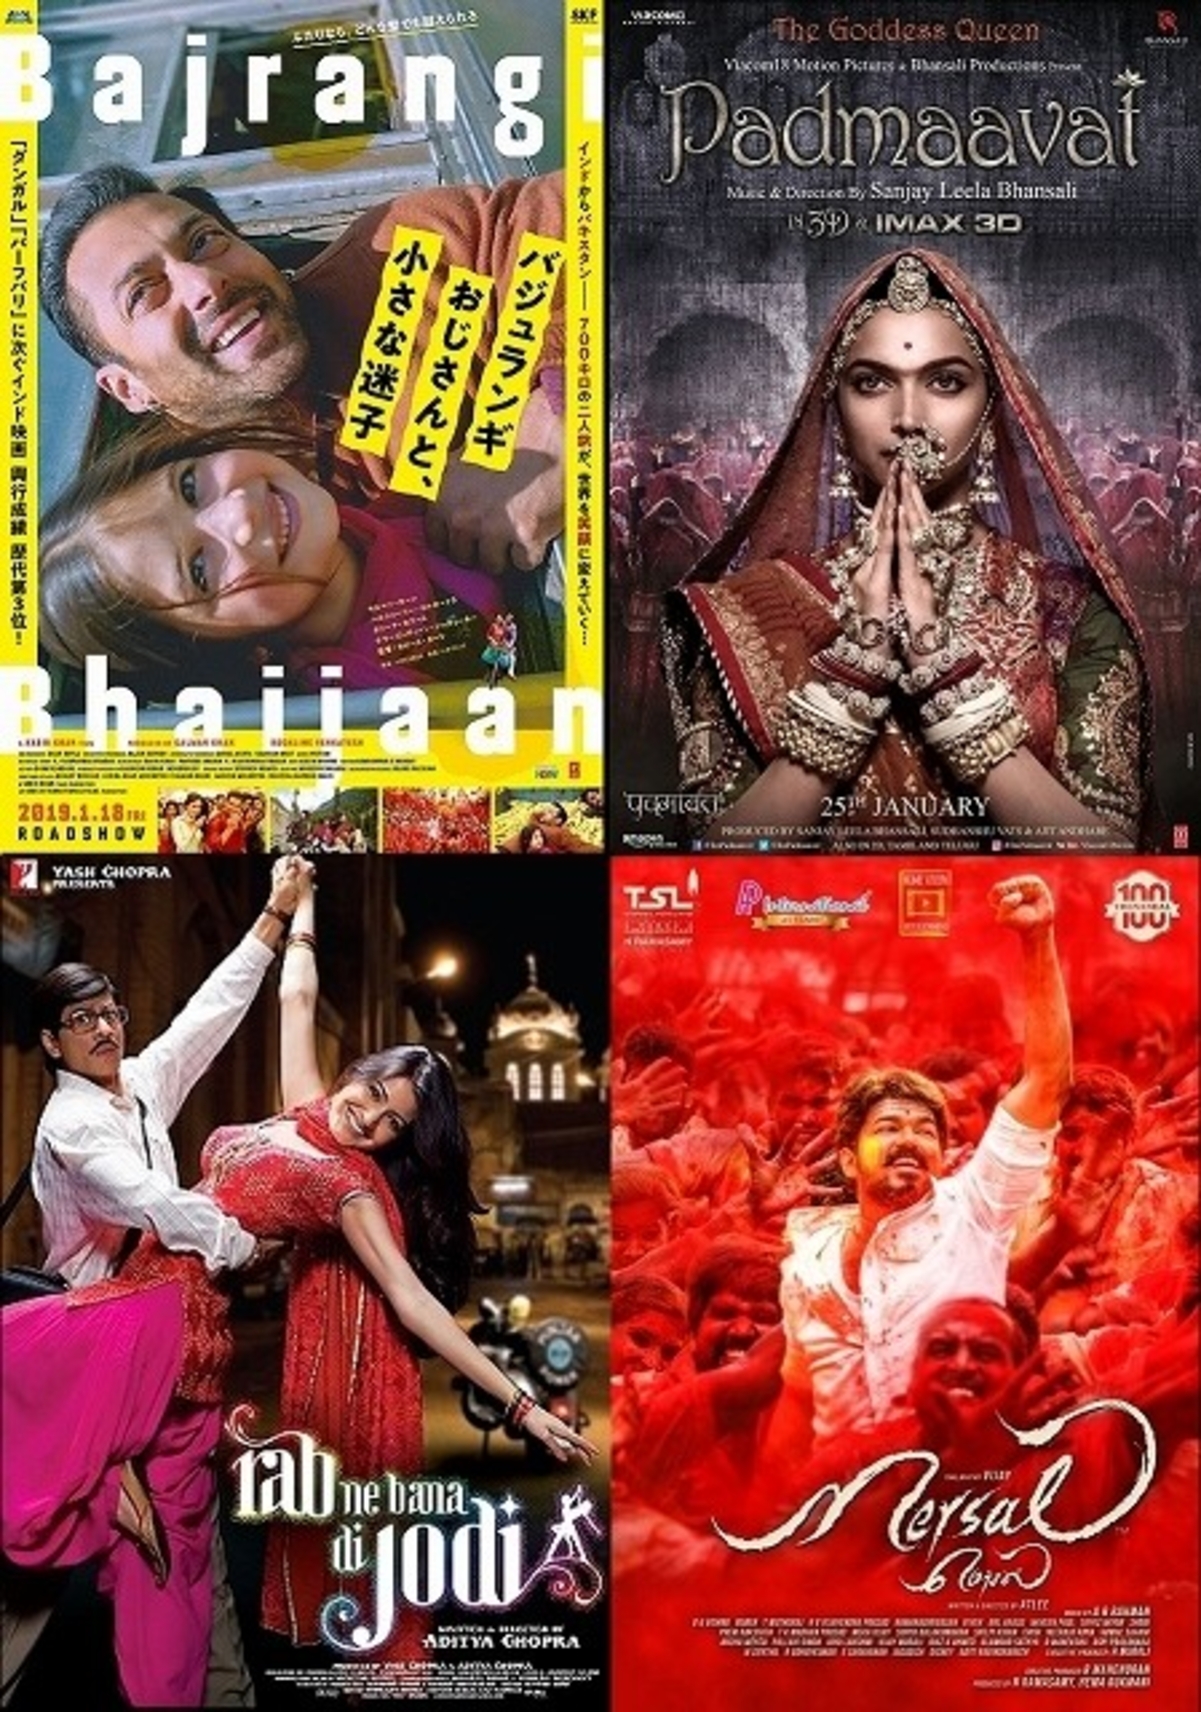 インド人に聞いてみた インド映画はなぜ歌って踊る 最新のオススメ作品は 映画ニュース 映画 Com